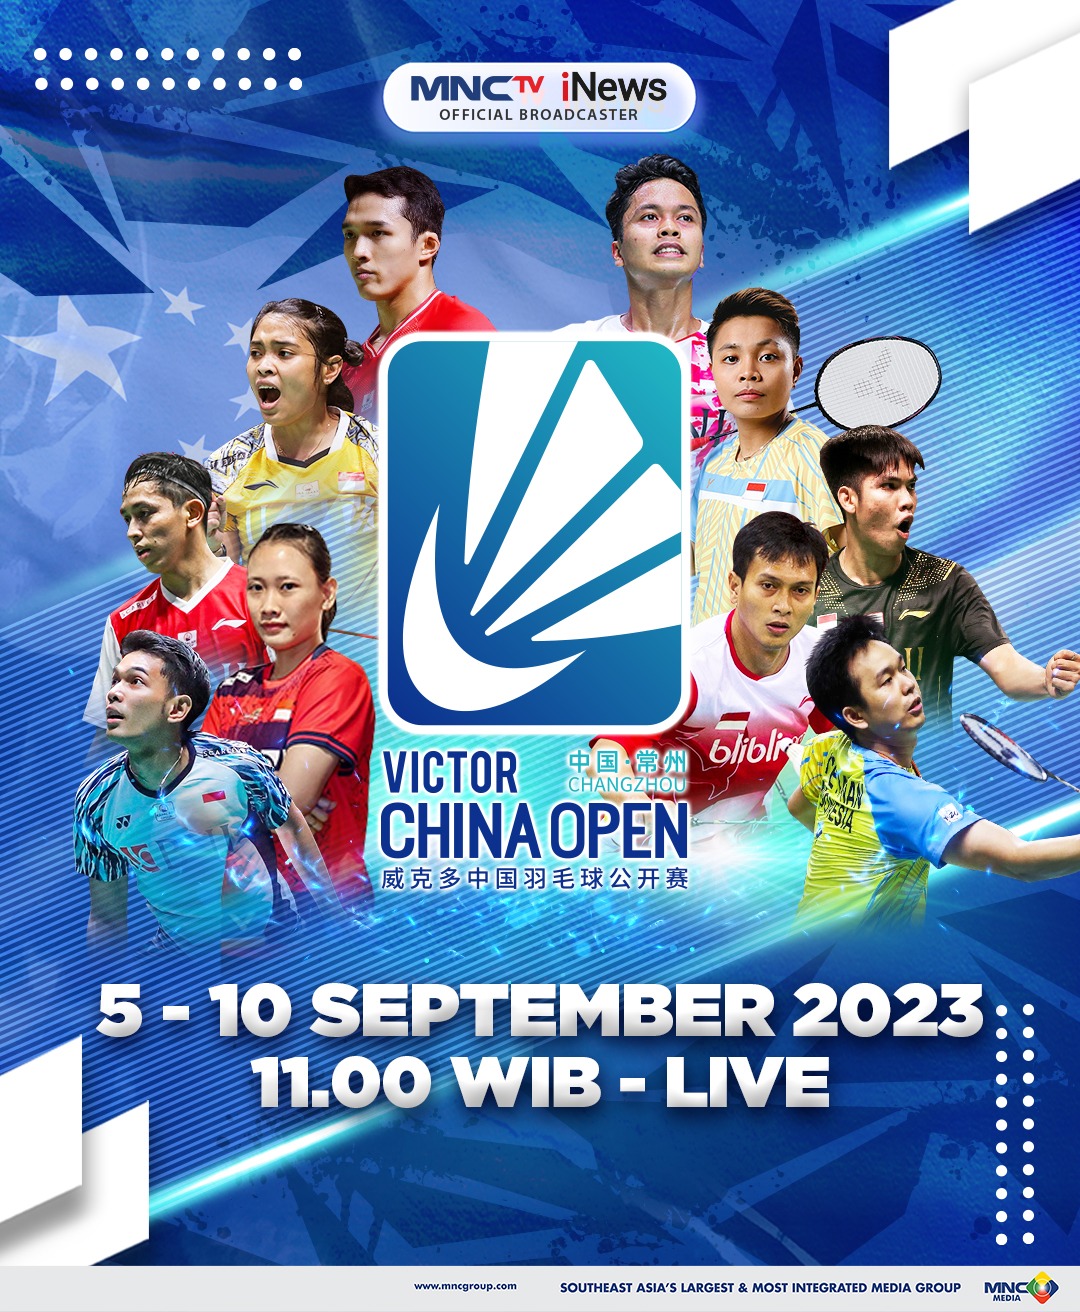 Saksikan Perjuangan Putra-Putri Bulutangkis Indonesia di Ajang Victor China Open 2023 di MNCTV